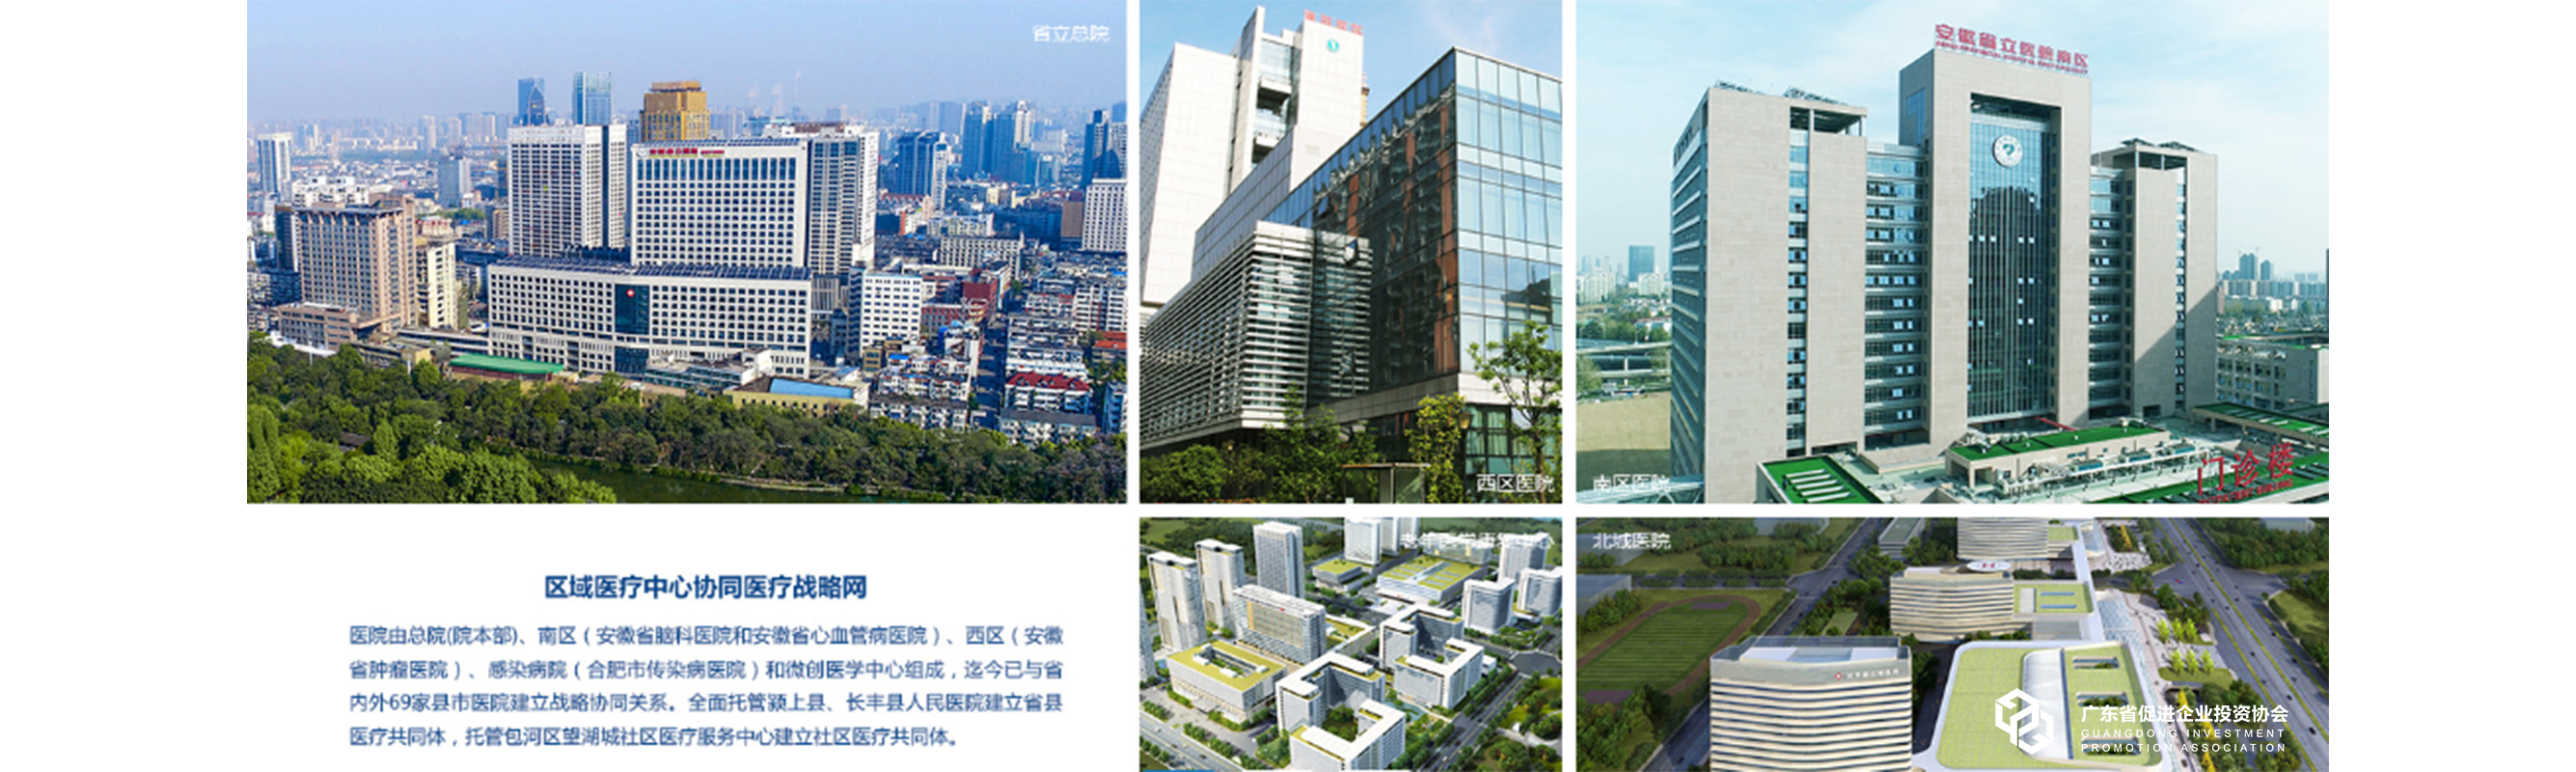 网站配图5：中国科学技术大学附属第一医院与69家县市医院建立战略协同关系.jpg